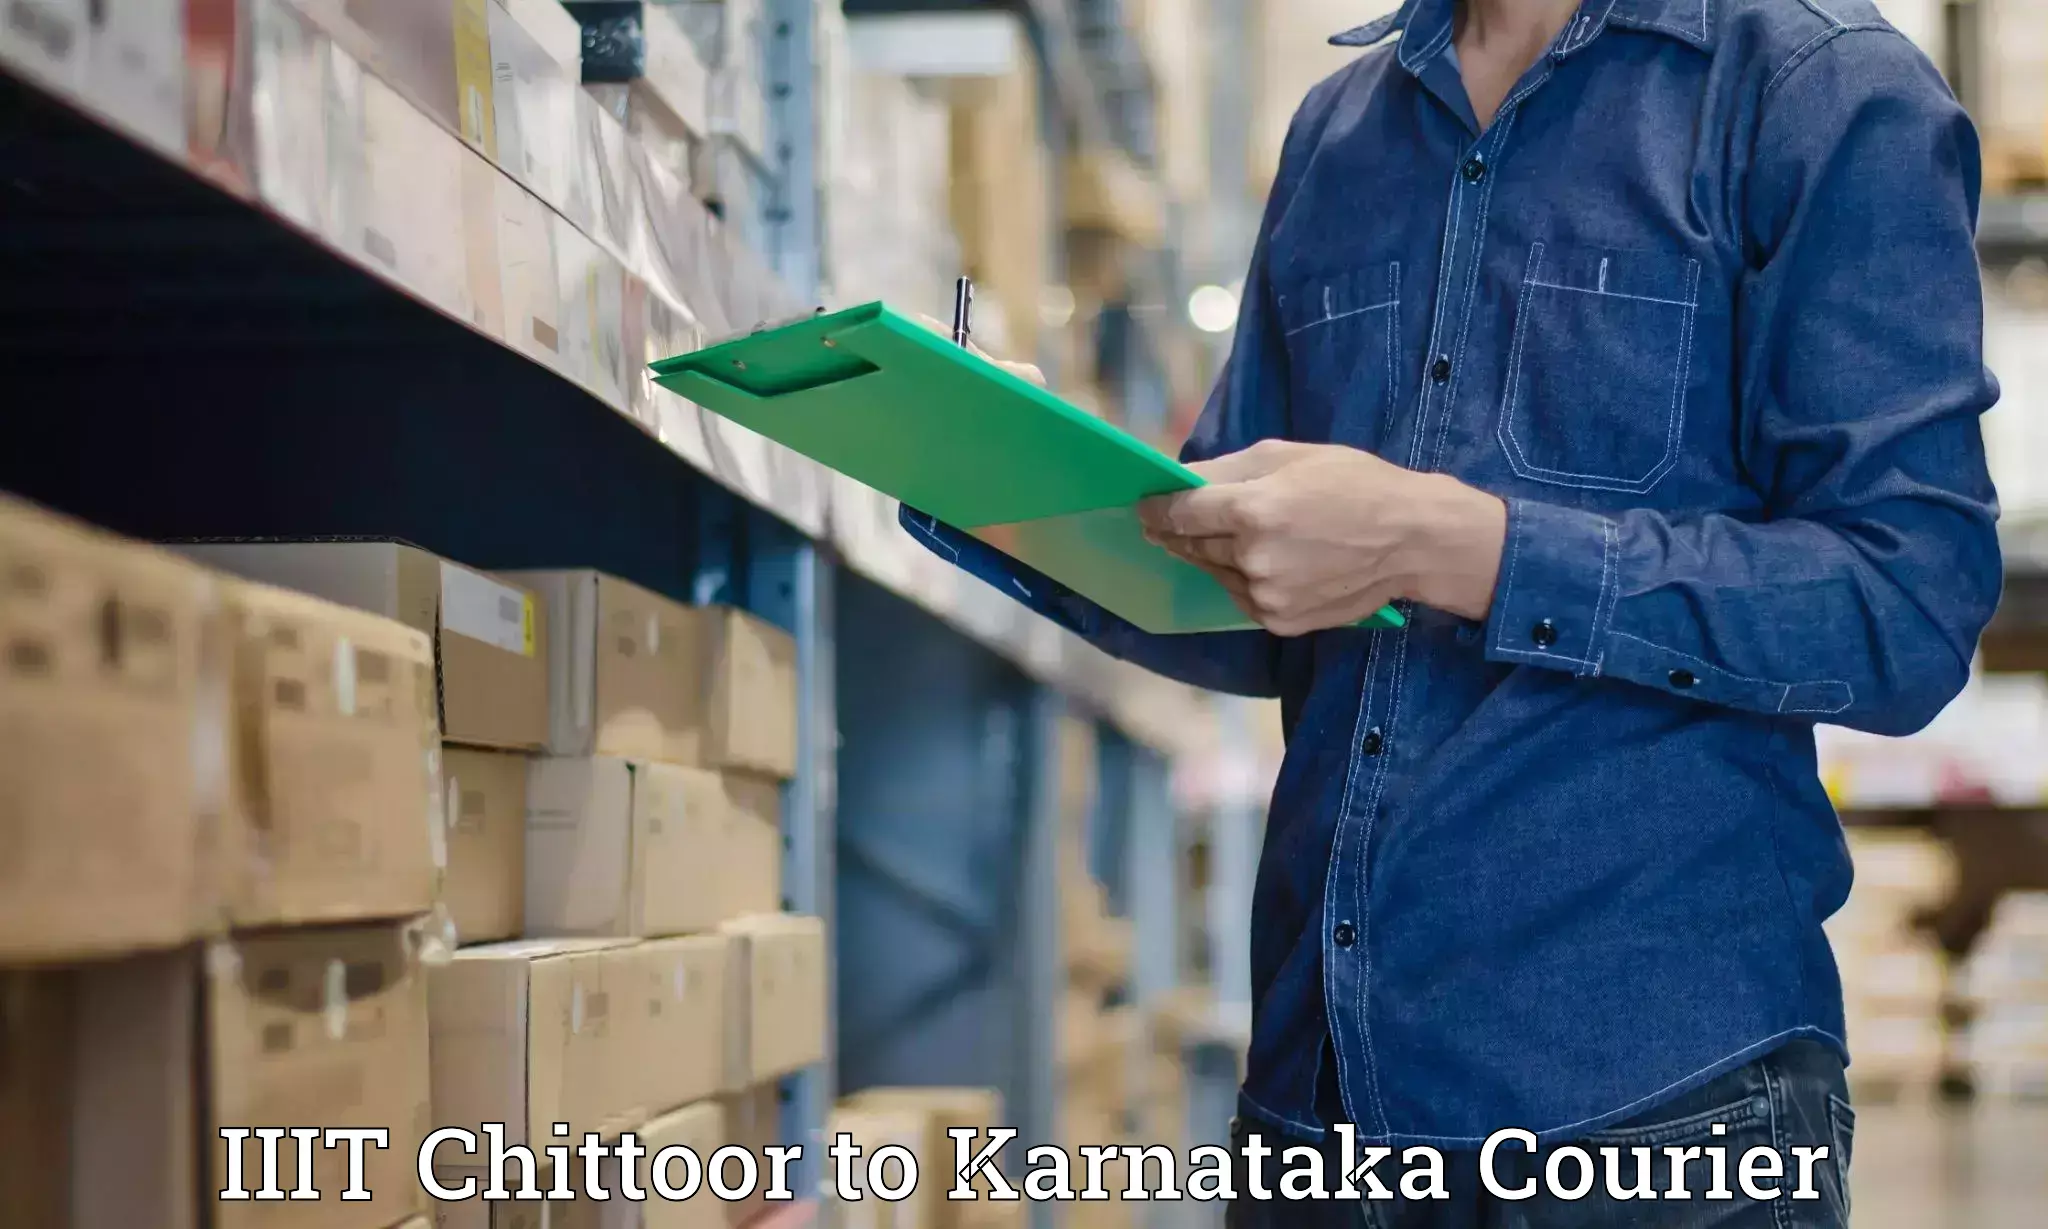 24-hour courier service IIIT Chittoor to Basavakalyan